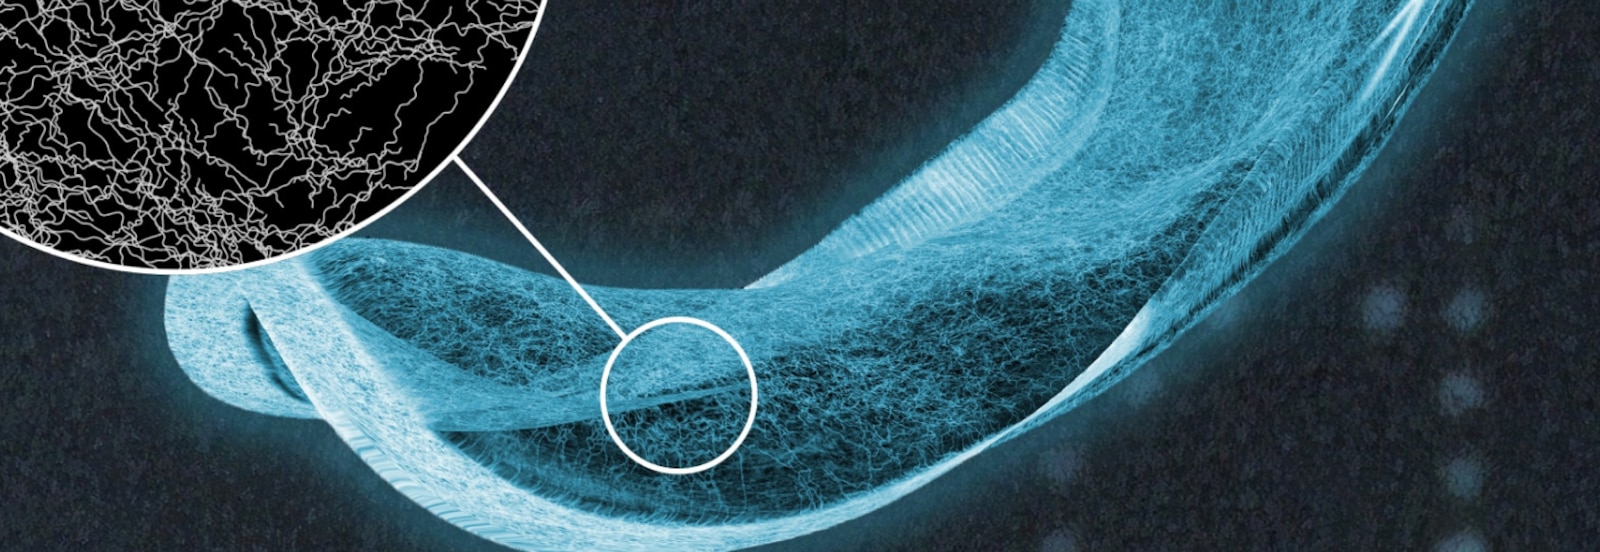 Rentgenový snímek absorpční vložky TENA s detailním zobrazením vláken v absorpčním jádru 